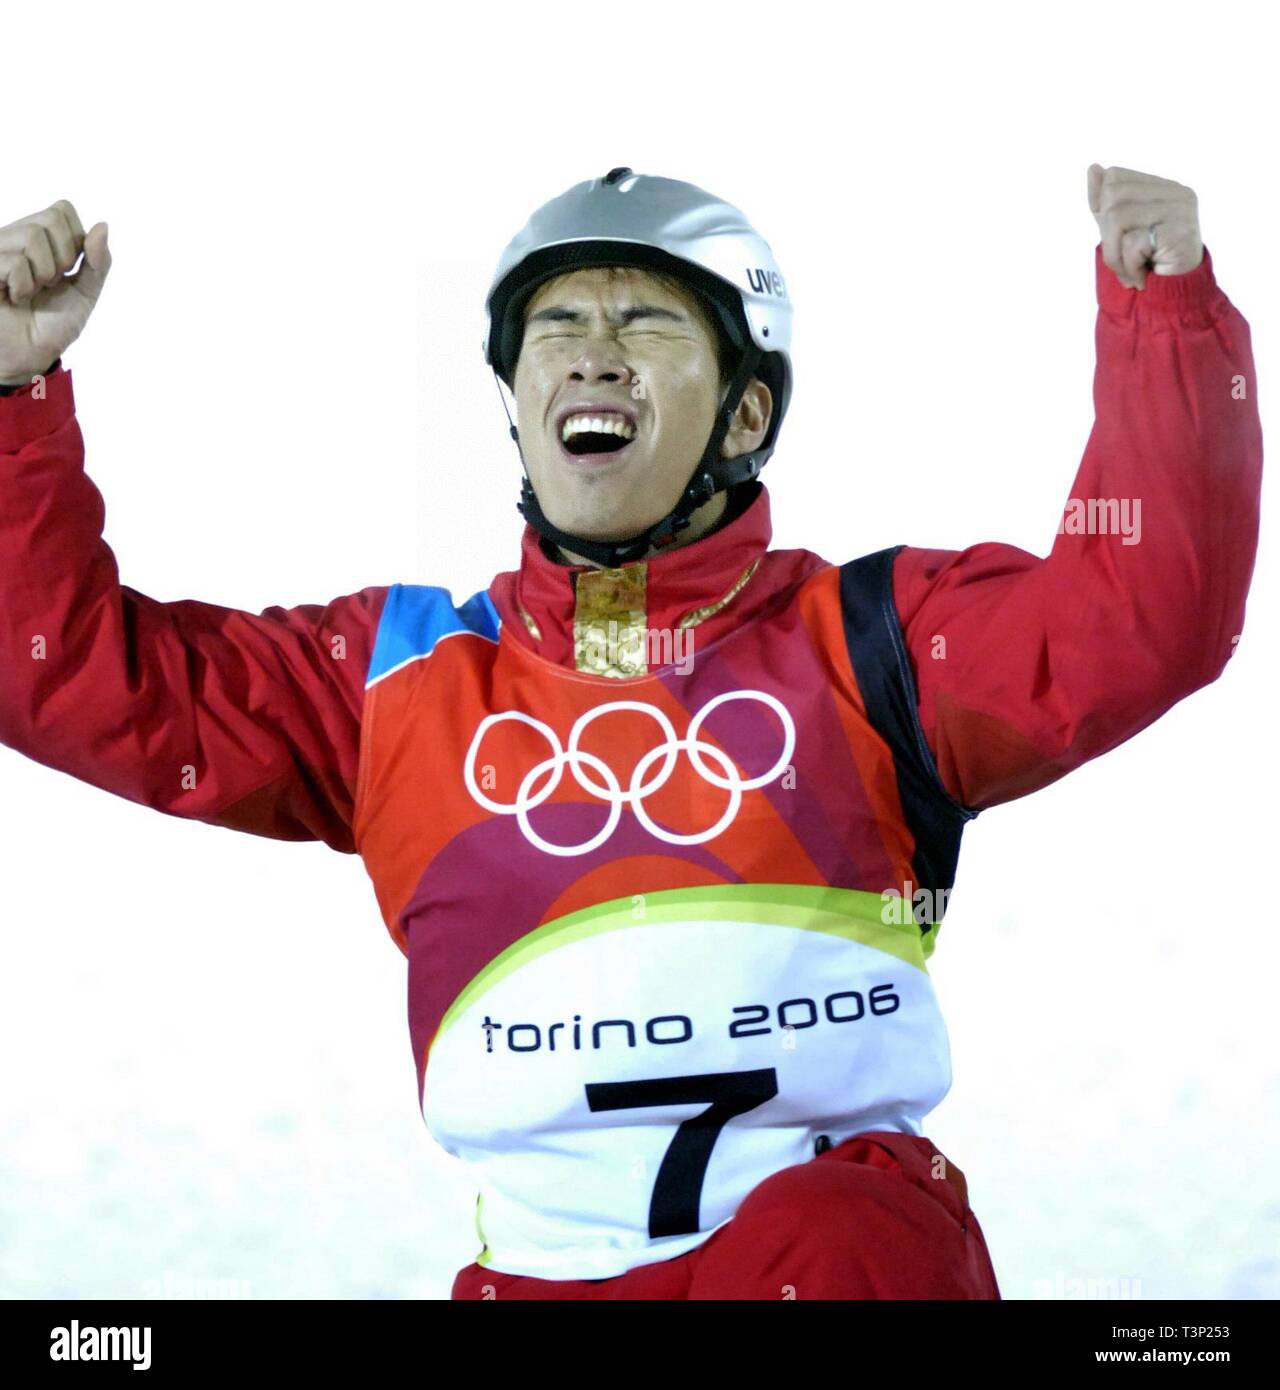 (190411) - Peking, April 11, 2019 (Xinhua) - Datei Foto am 13.02.23, 2006, zeigt, dass Chinas Xiaopeng Han nach seinem Wettbewerb für Antennen Finale in Turin die Olympischen Winterspiele in Italien Männer jubilates genommen. Han Xiaopeng behauptete den Titel und gewann die China das erste olympische Goldmedaille im Schneesport. Senden von Athleten, die Olympischen Spiele in Helsinki zum ersten Mal im Jahr 1952 zu dem Zuschlag 2022 Winter-olympischen Spiele im Jahr 2015 zu bewirten, der Volksrepublik China ging durch eine bemerkenswerte Geschichte des Sports, einschließlich erfolgreich die 2008 Olympischen G Hosting Stockfoto